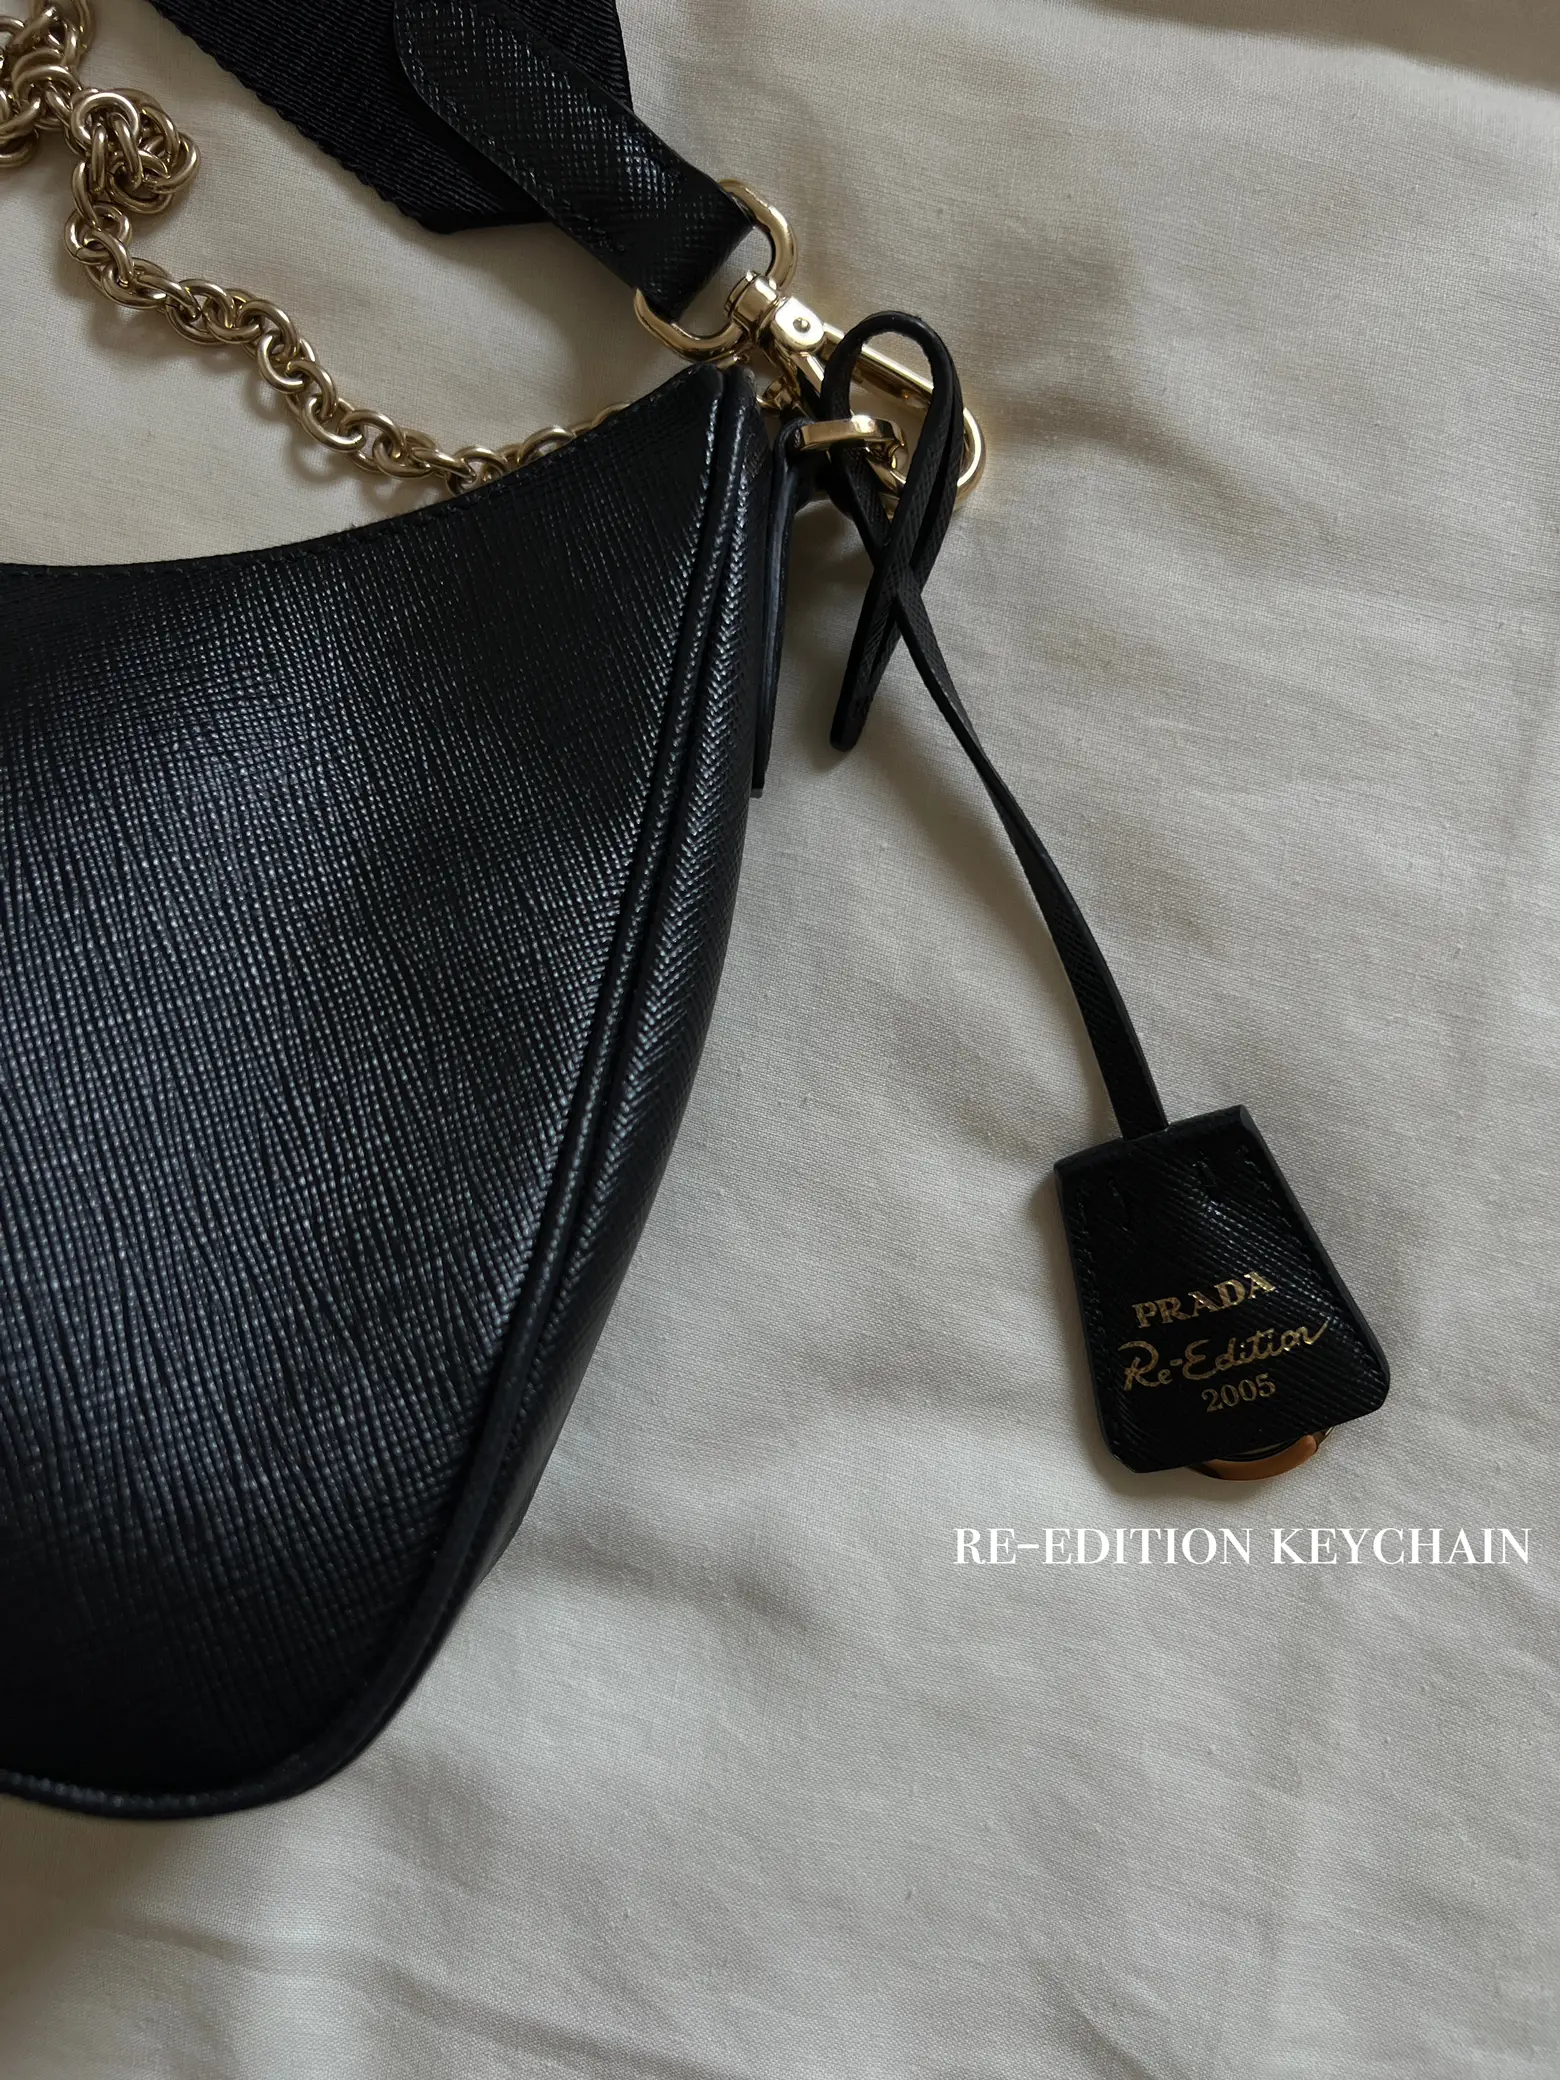 Review of Prada Re-Edition 2005 Bag